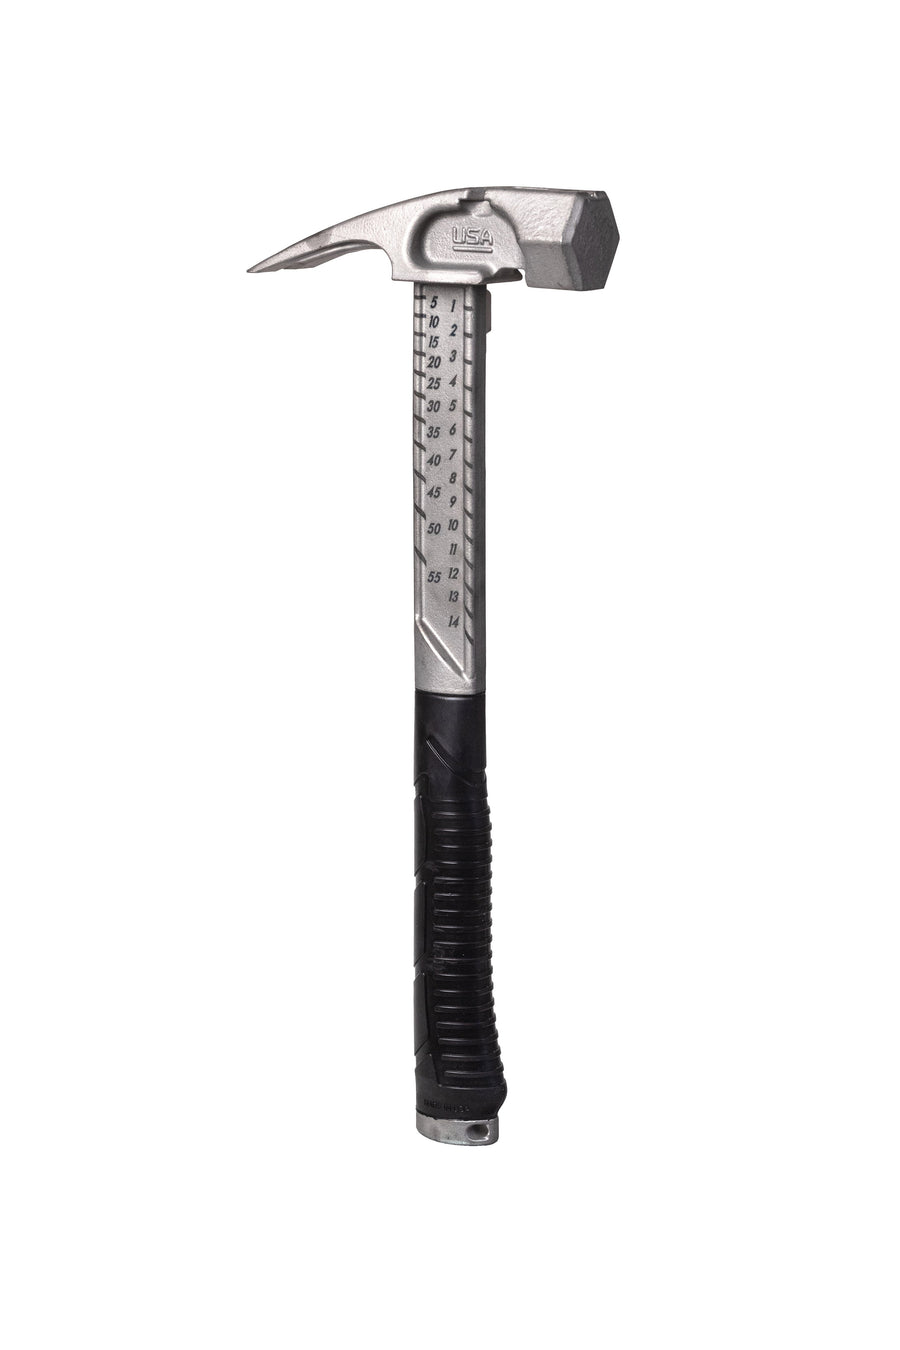 NEW METRIC Pro Plus Titanium Hammer Titanium Boss Hammer Co. 